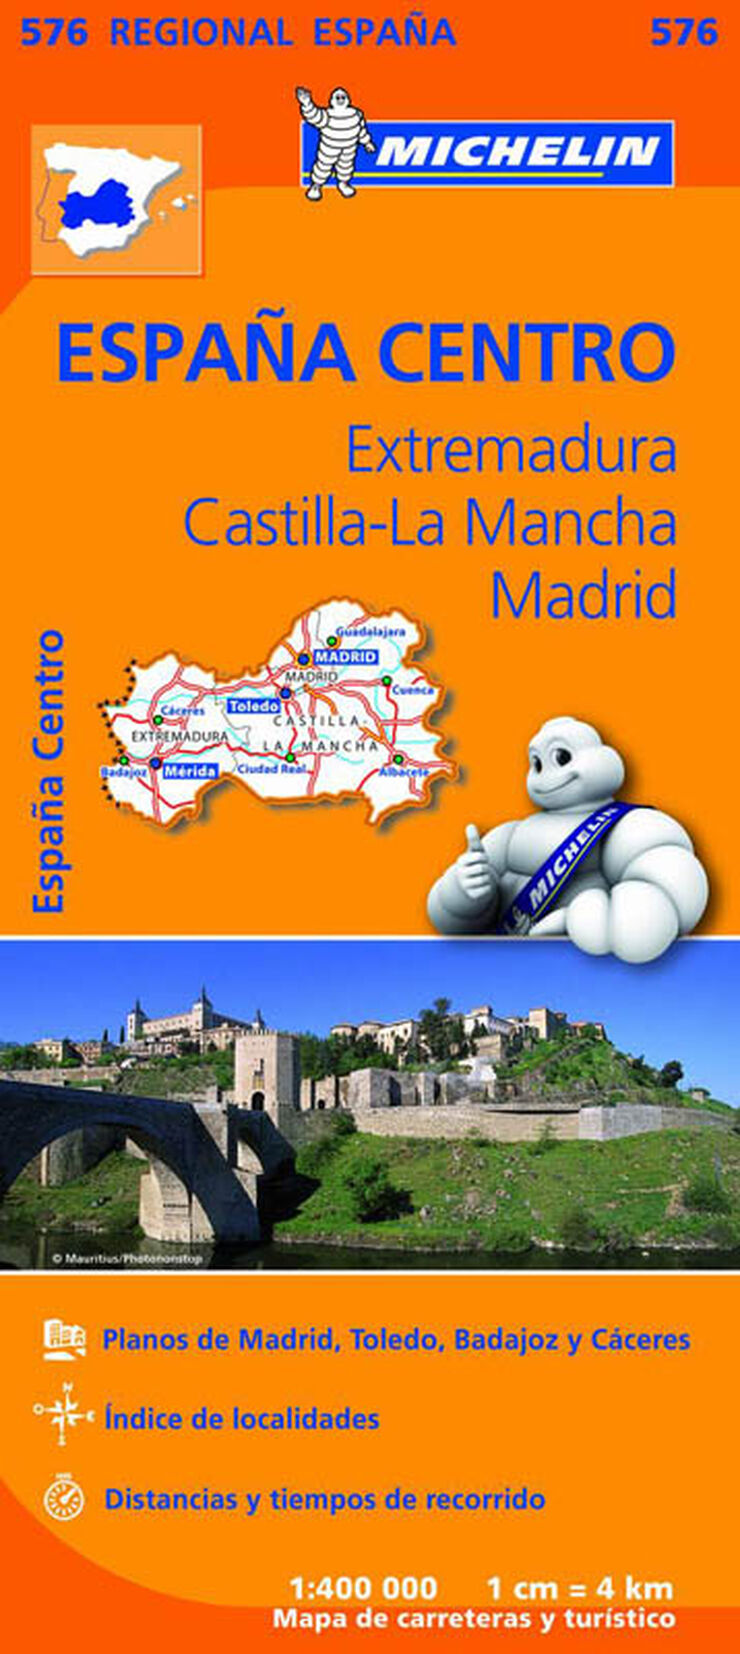 Extremadura, Castilla la Mancha, Madrid